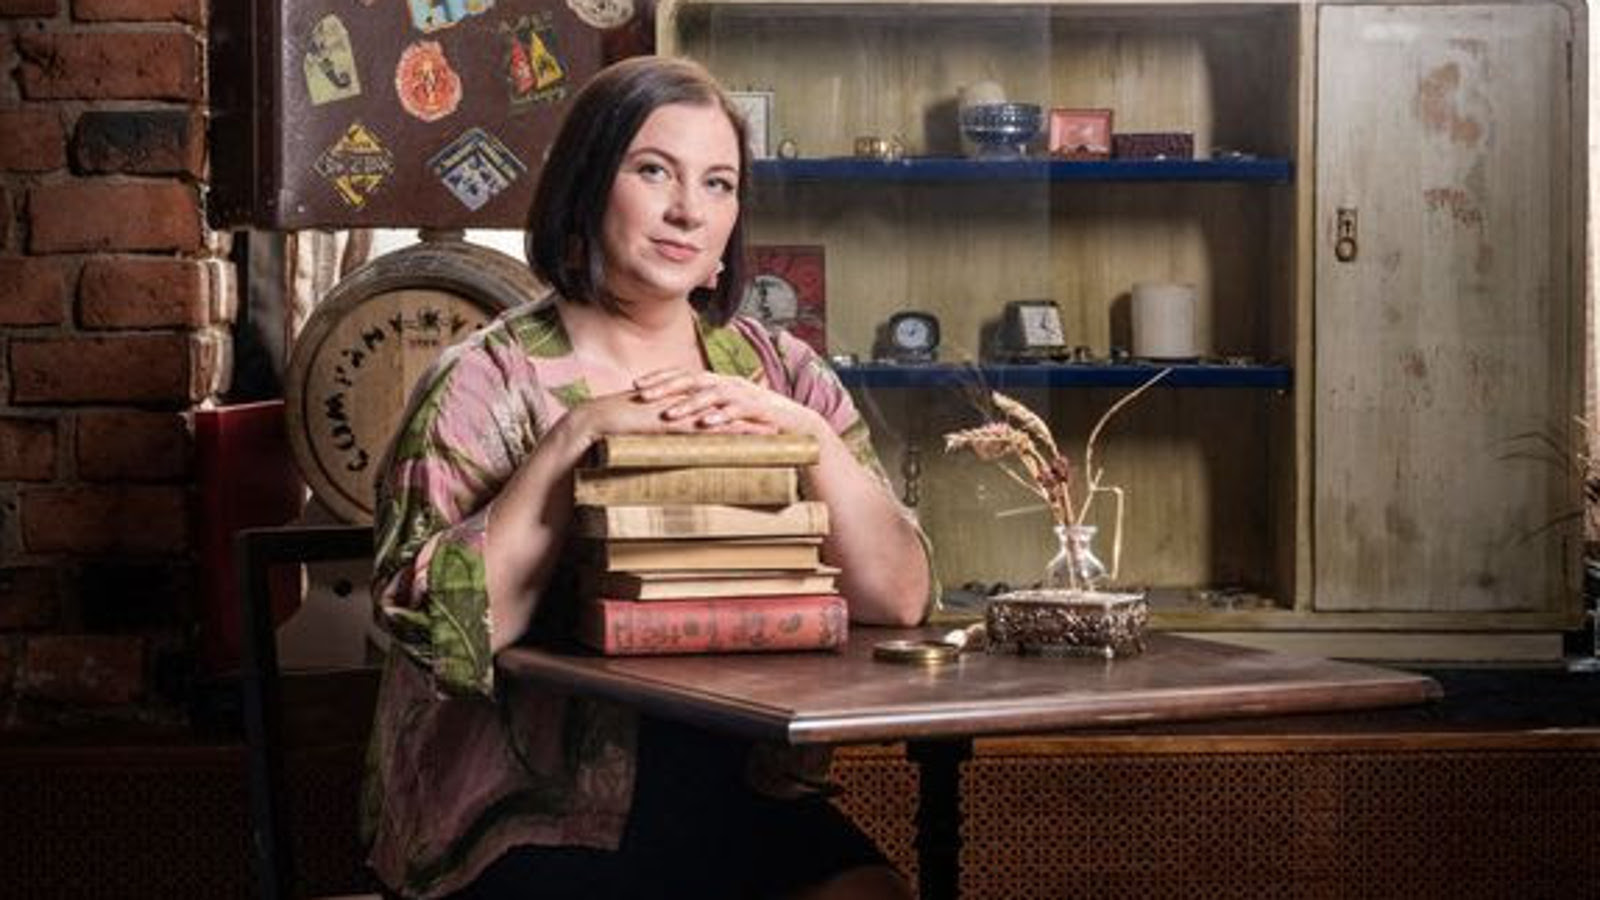 Kuvassa on Janica Brander istumassa pöydän ääressä kirjapino käsiensä alla. Taustalla näkyy kirjahylly ja kuvan sävy on ruskea.